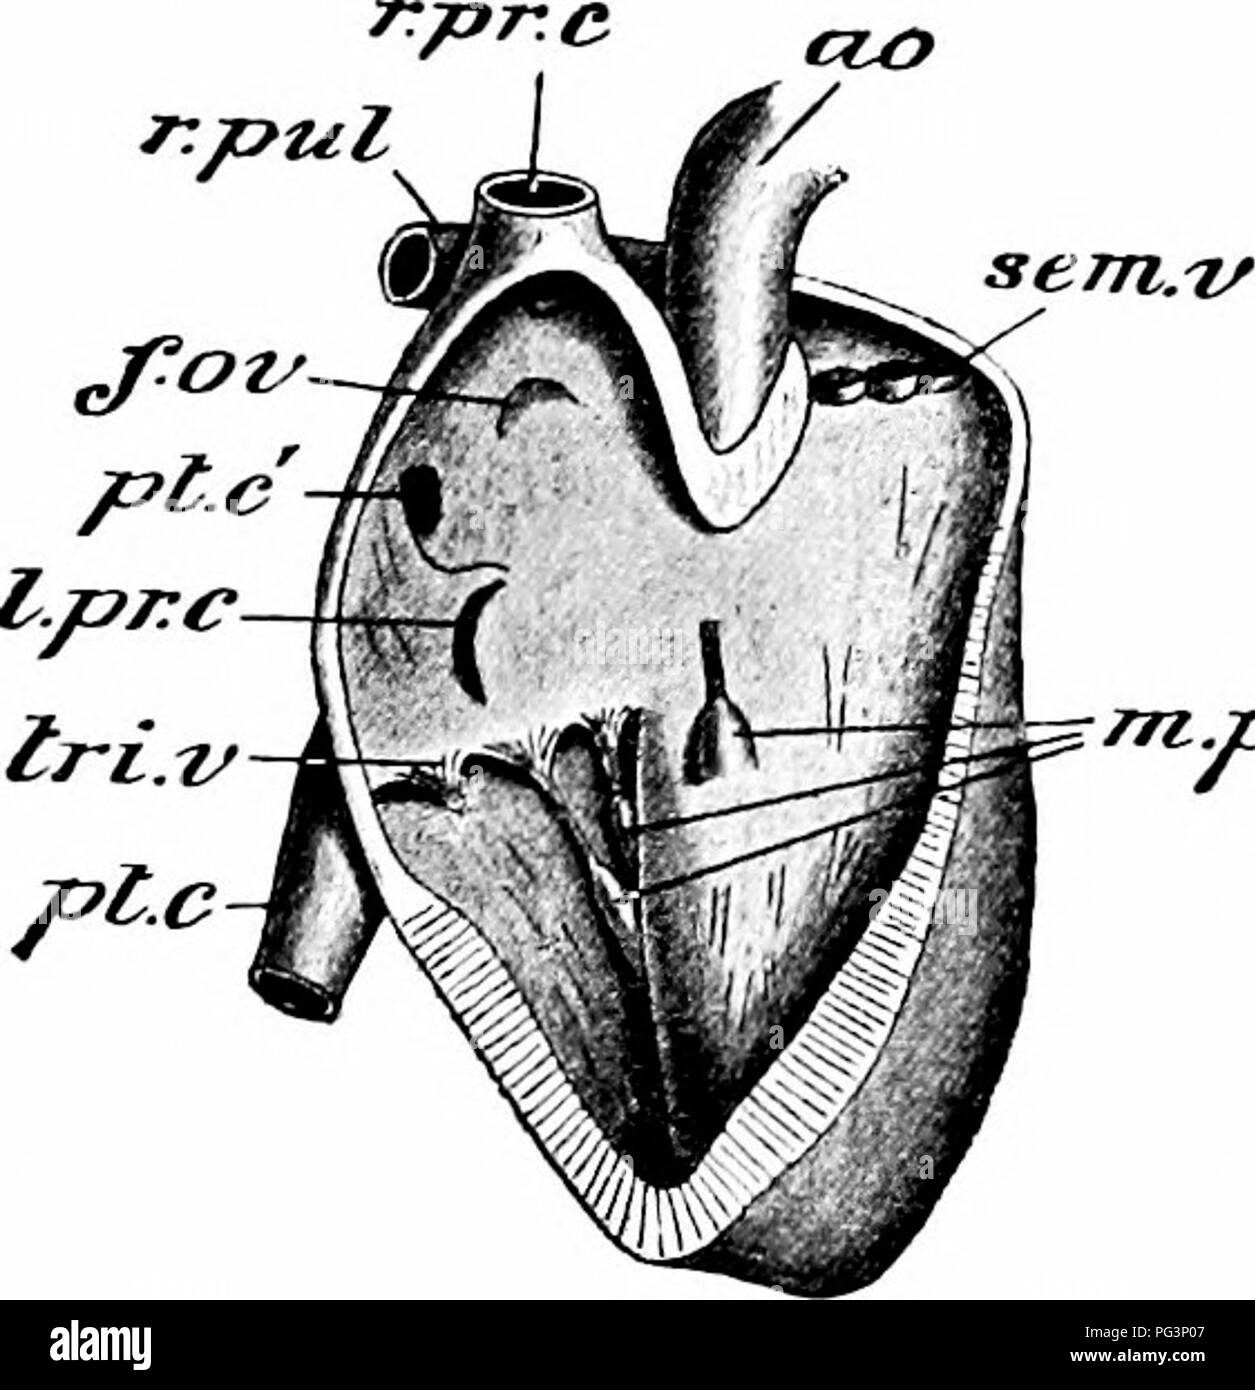 . Un manuale di zoologia. setta, xii PHYLUM CHORDATA 509 viscerale, immediatamente investendo il cuore. Tra i due è una stretta cavità contenente una piccola quantità di fluido, il fluido pericardica. In generale a forma di cuore assomiglia a quello del piccione, con l'apice rivolto all'indietro e leggermente verso sinistra e la base in avanti. Come quella del piccione, contiene la destra e sinistra auricole e a destra e sinistra i ventricoli, i lati destro e sinistro del cuore aventi le loro cavità completamente separati uno dall'altro da inter-auricolare e inter-ventricolare di partizioni.. mpat pap Fig. 306. - Lepus Cunic Foto Stock